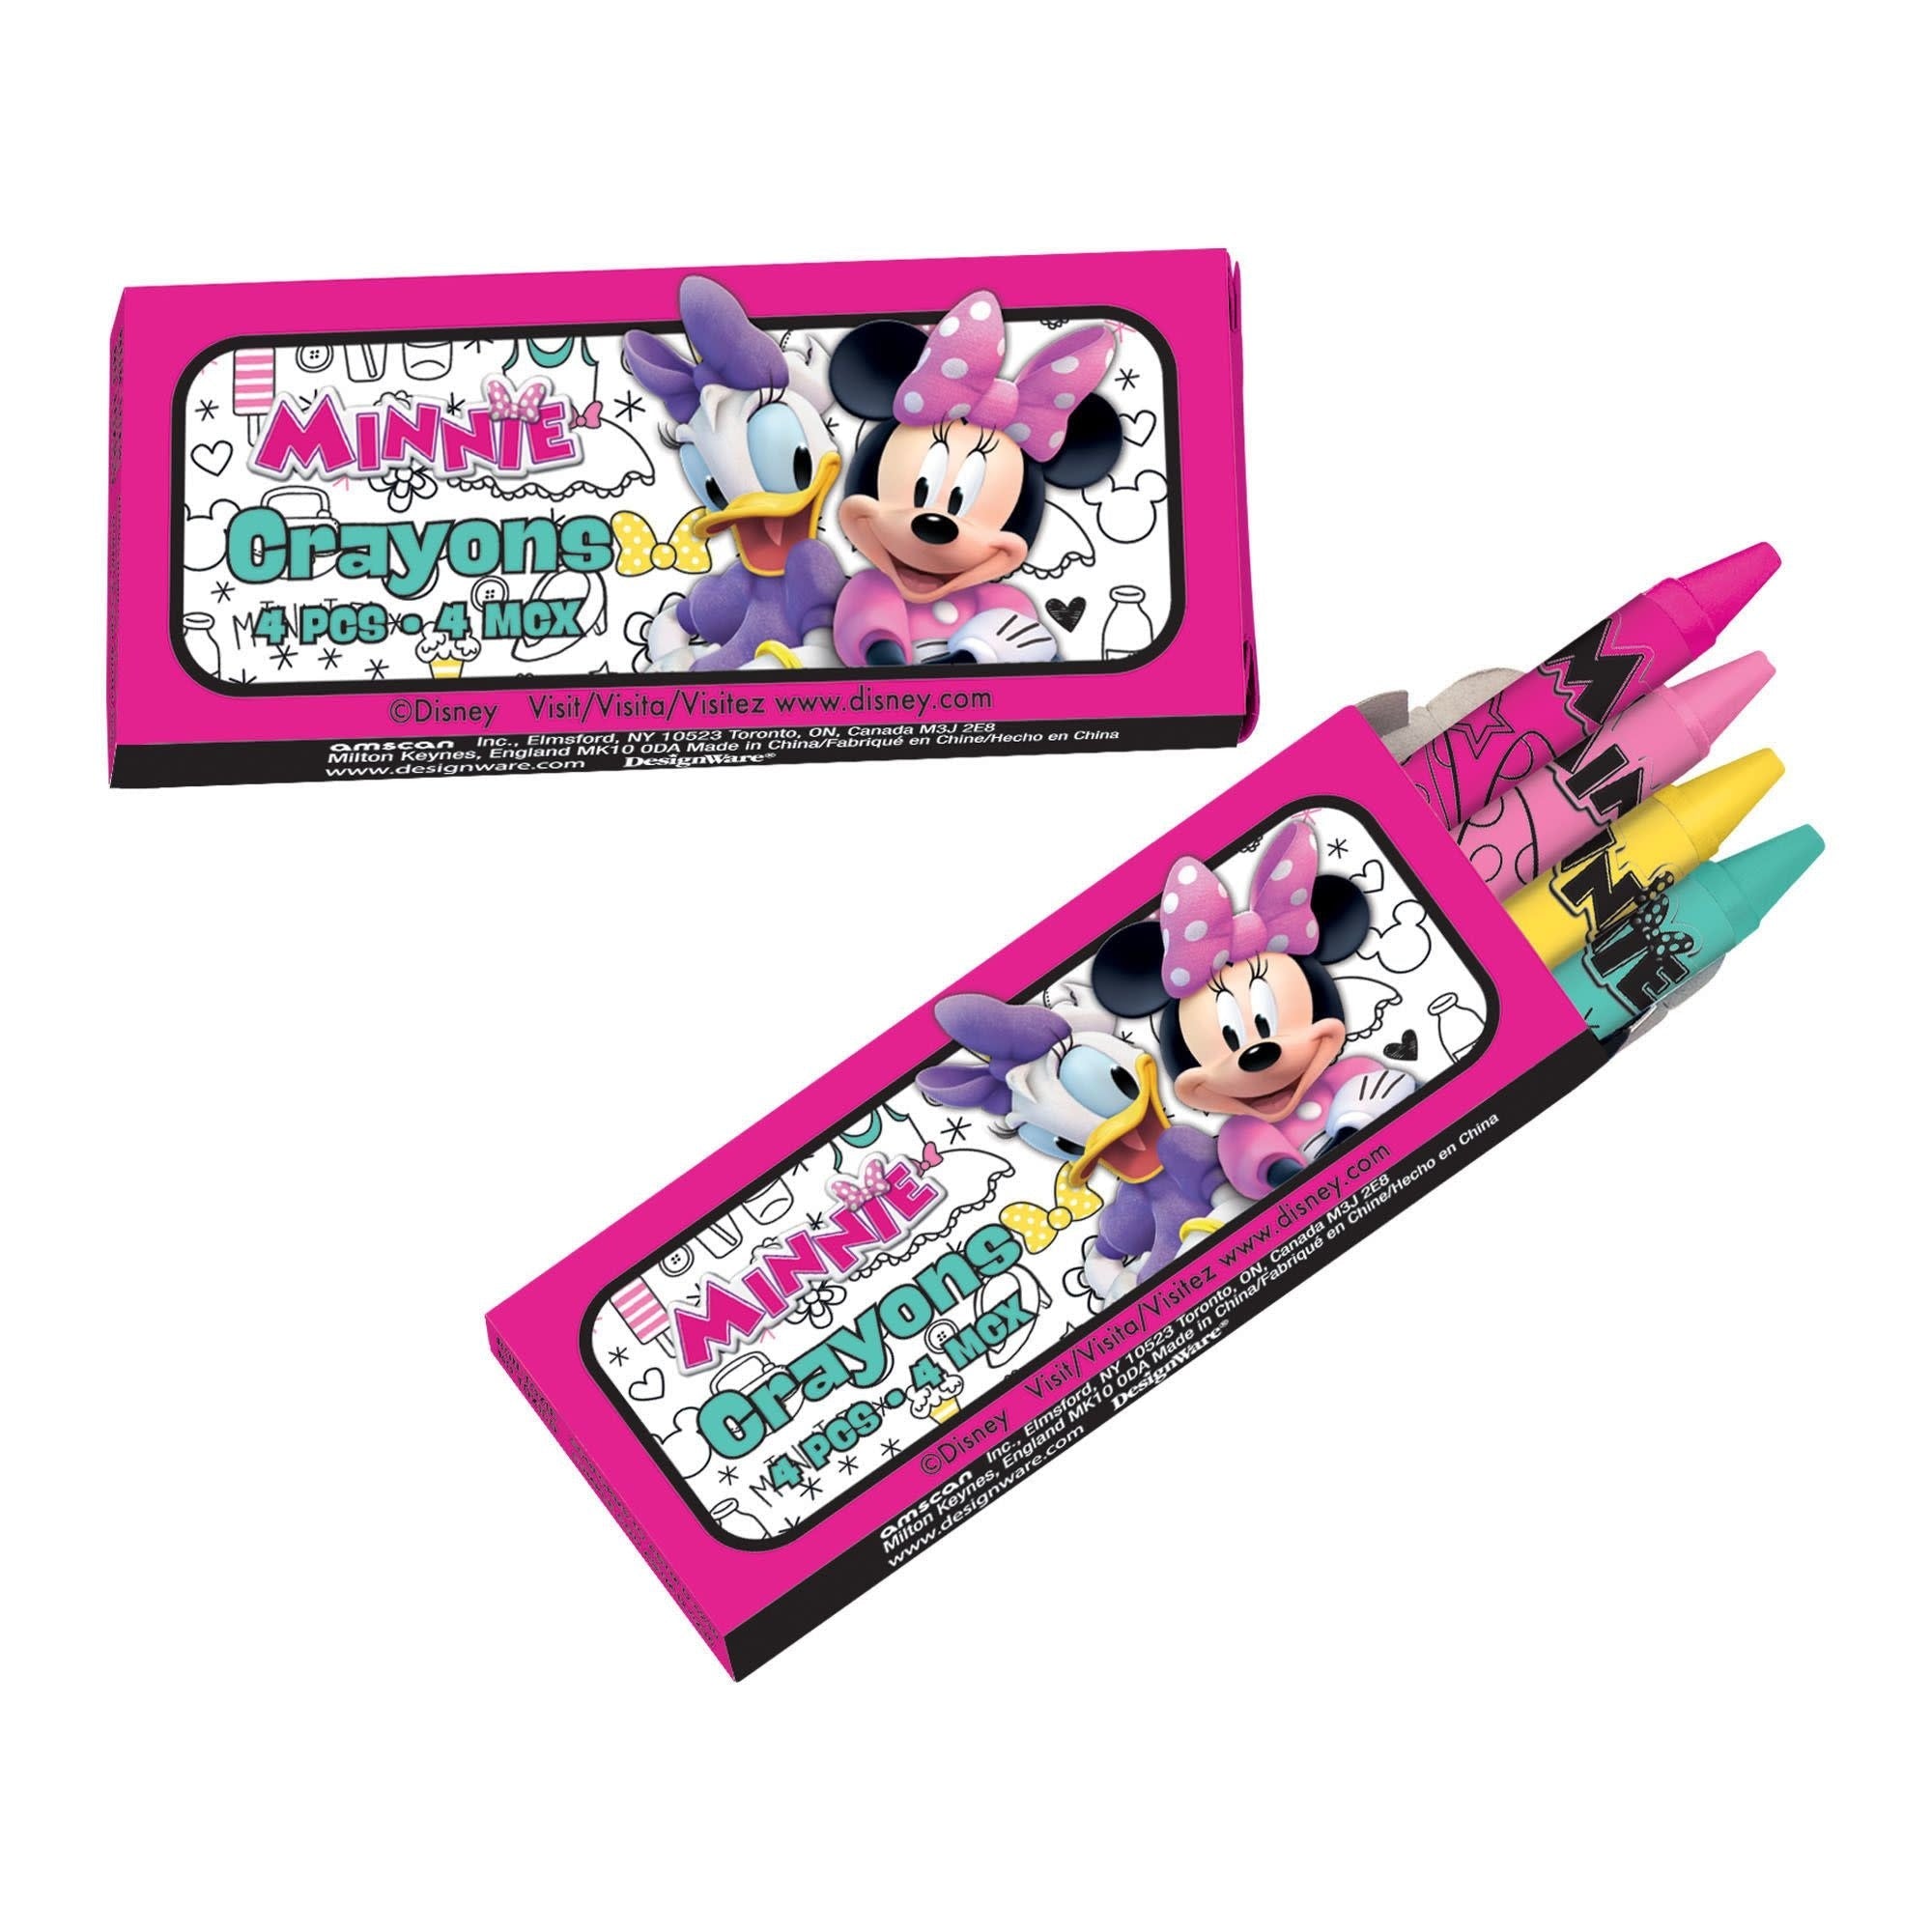 Paquets De Crayons De Cire (12X4Mcx) - Minnie MouseParty Shop